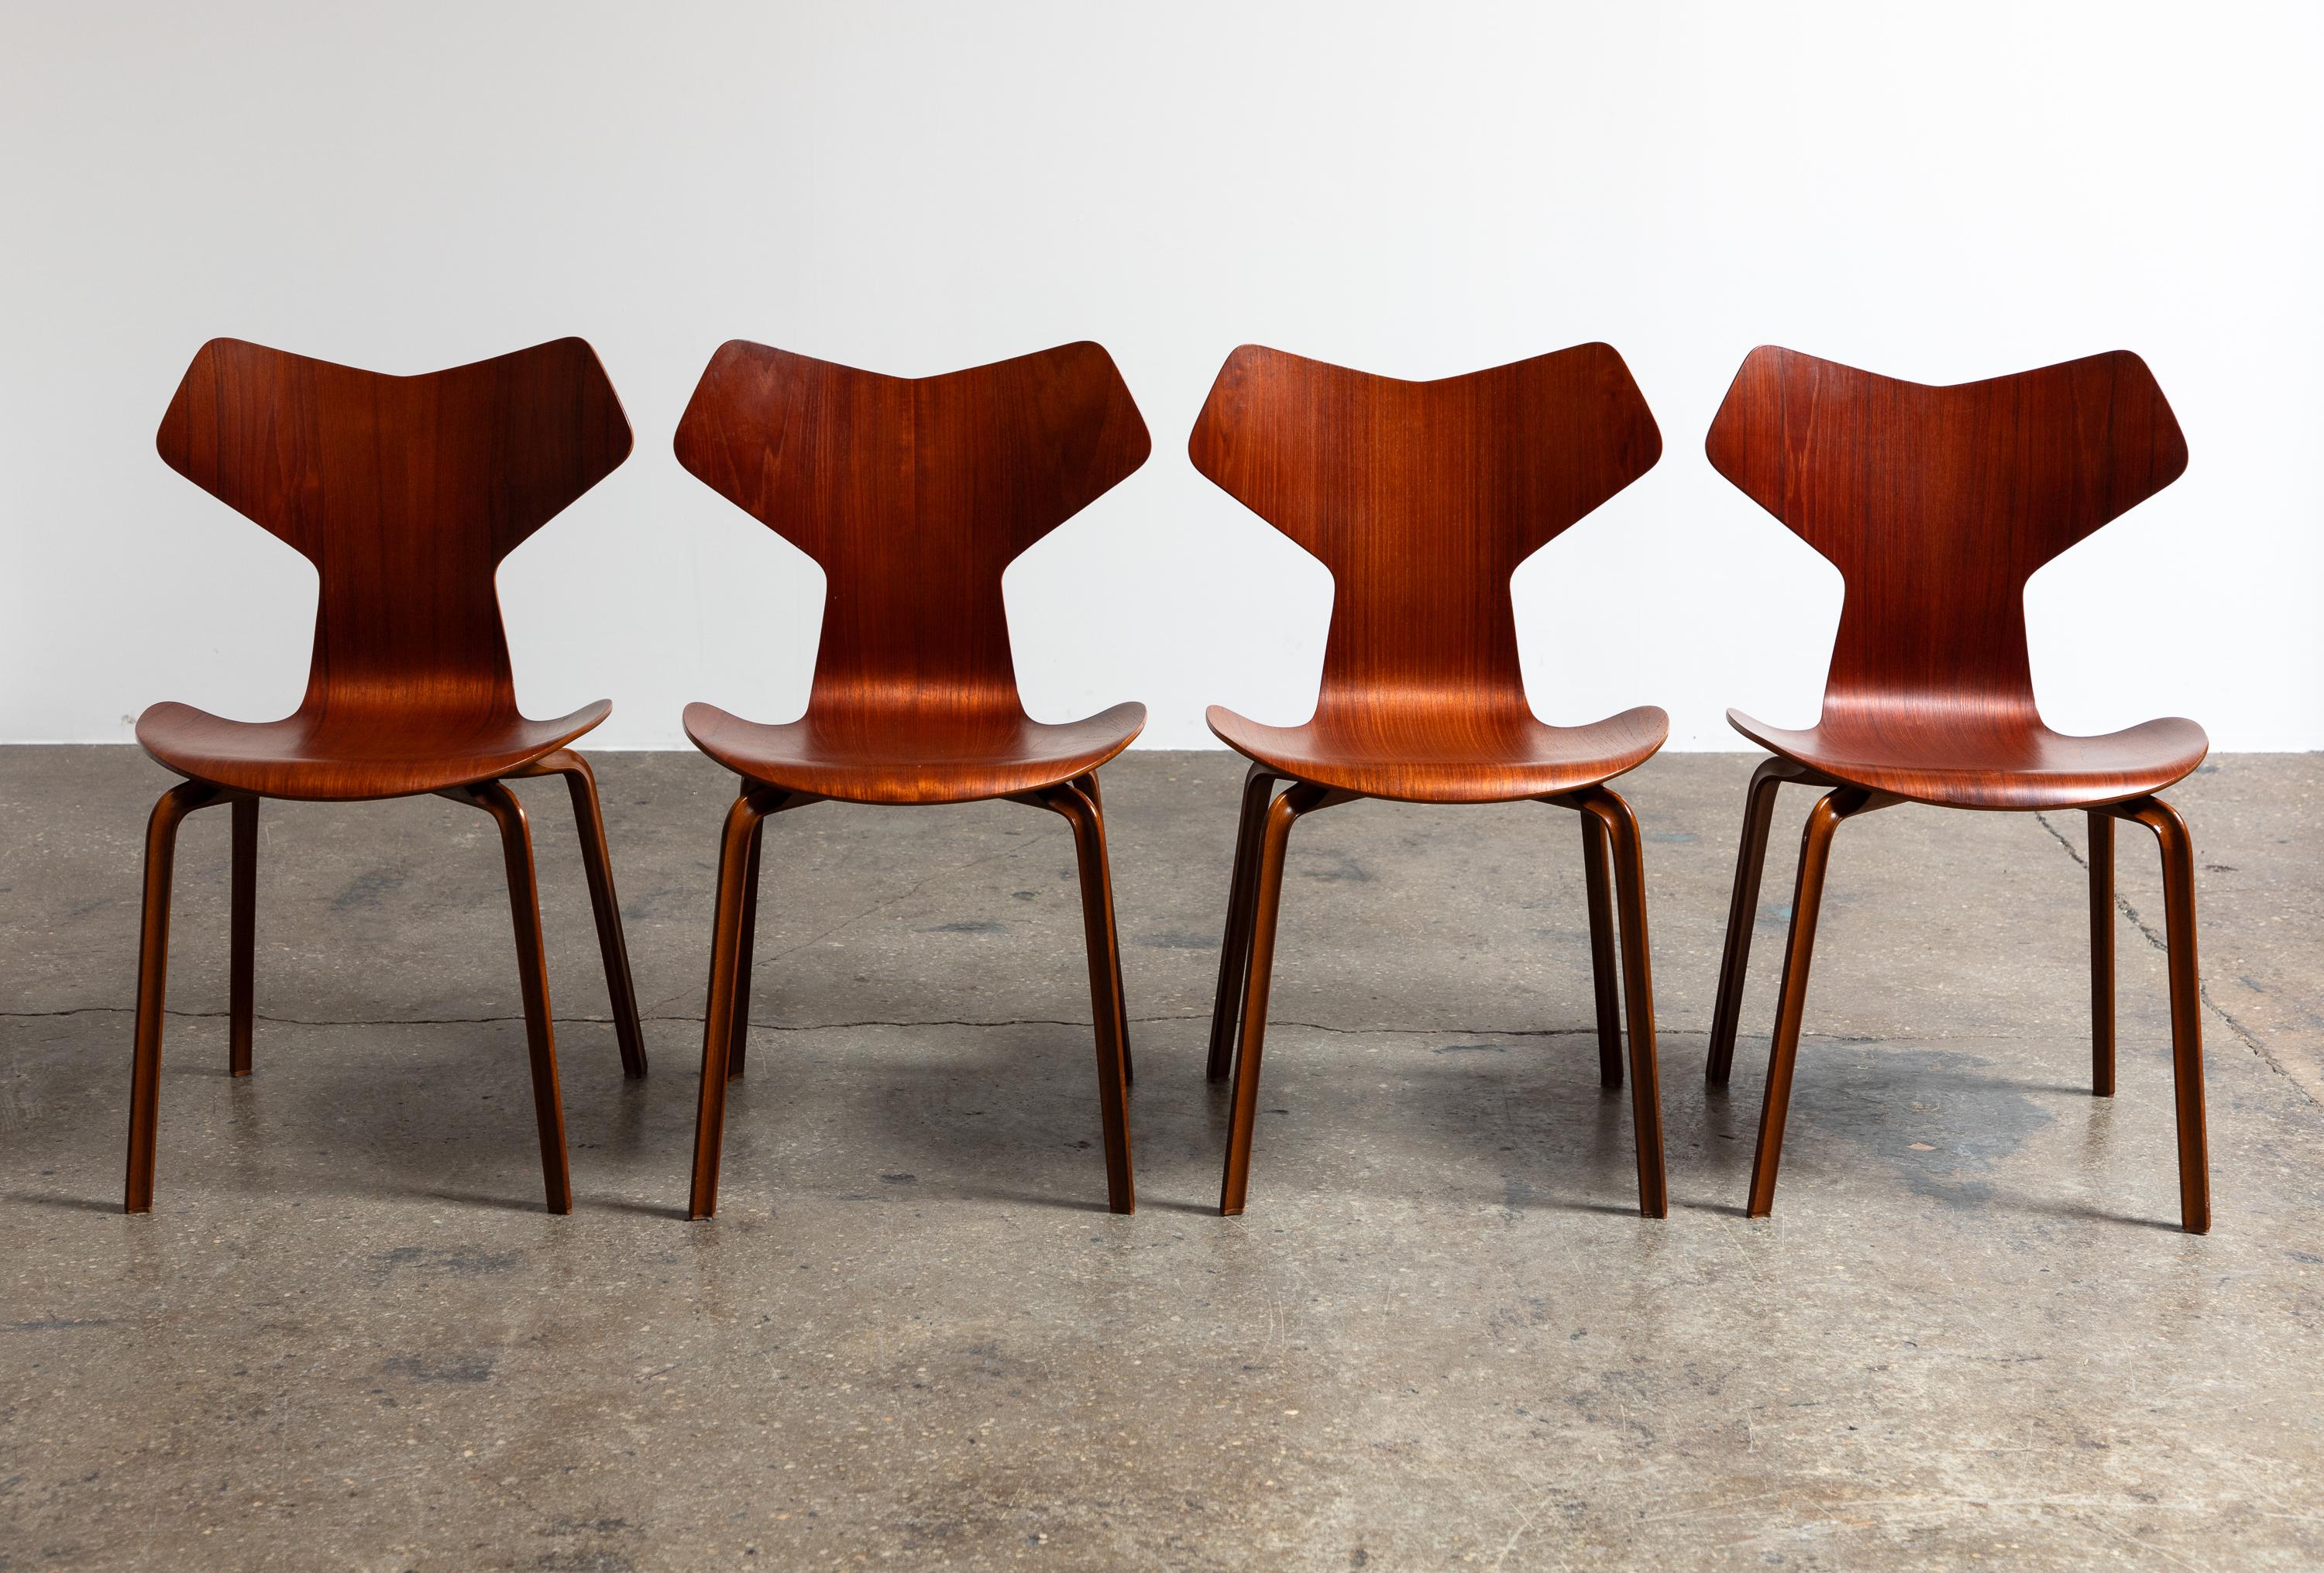 Superbe ensemble de chaises Grand Prix conçues par Arne Jacobsen pour Fritz Hansen. Légères et confortables, ces chaises sont en bon état vintage avec une belle sélection de bois de teck chaud partout. Les chaises ont été très peu utilisées et leur